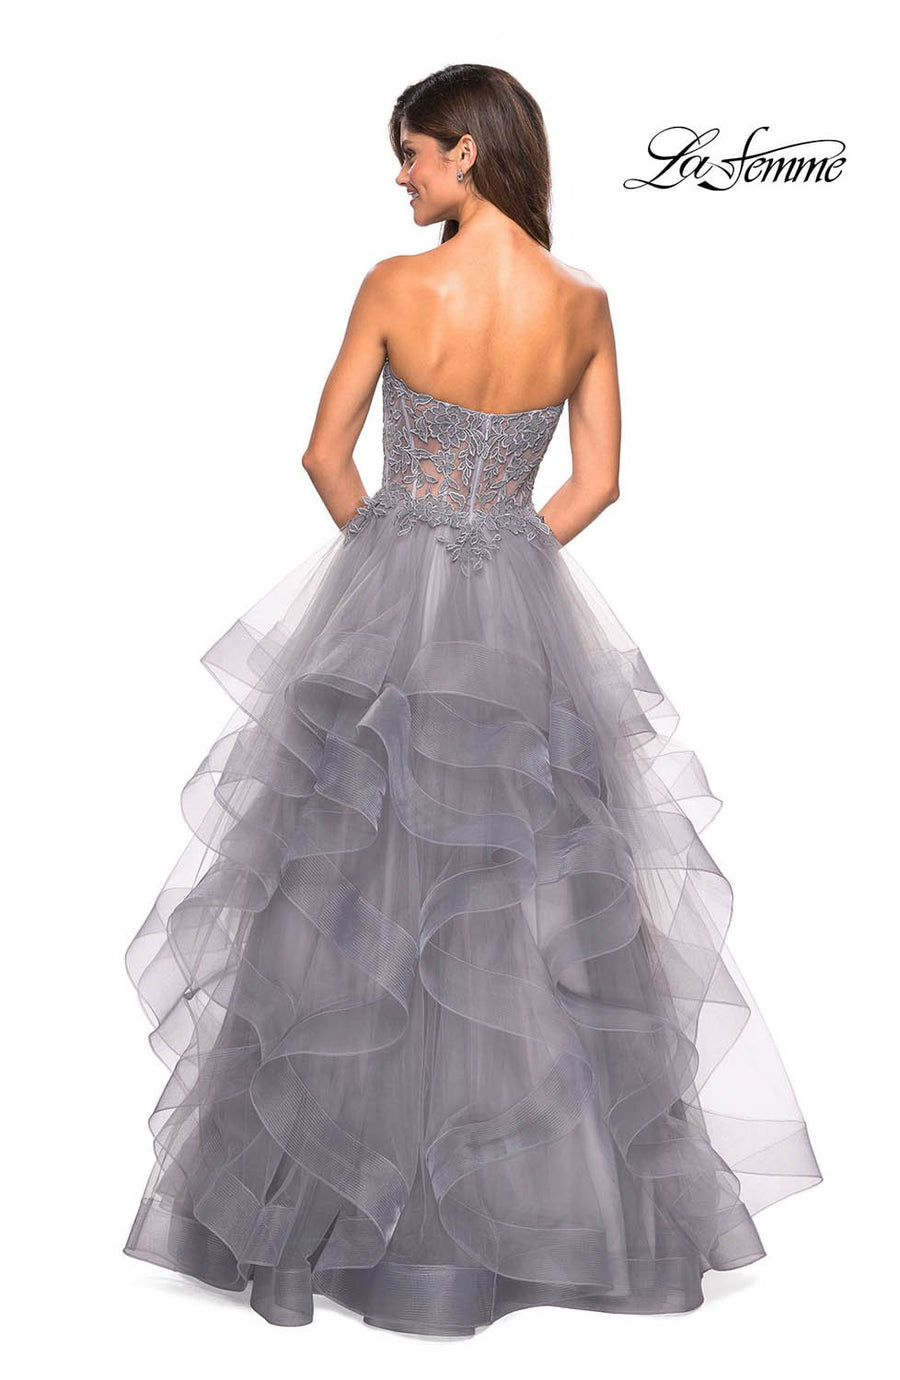 La Femme 27620 prom dress images.  La Femme 27620 is available in these colors: Cloud Blue, Mauve, Silver.